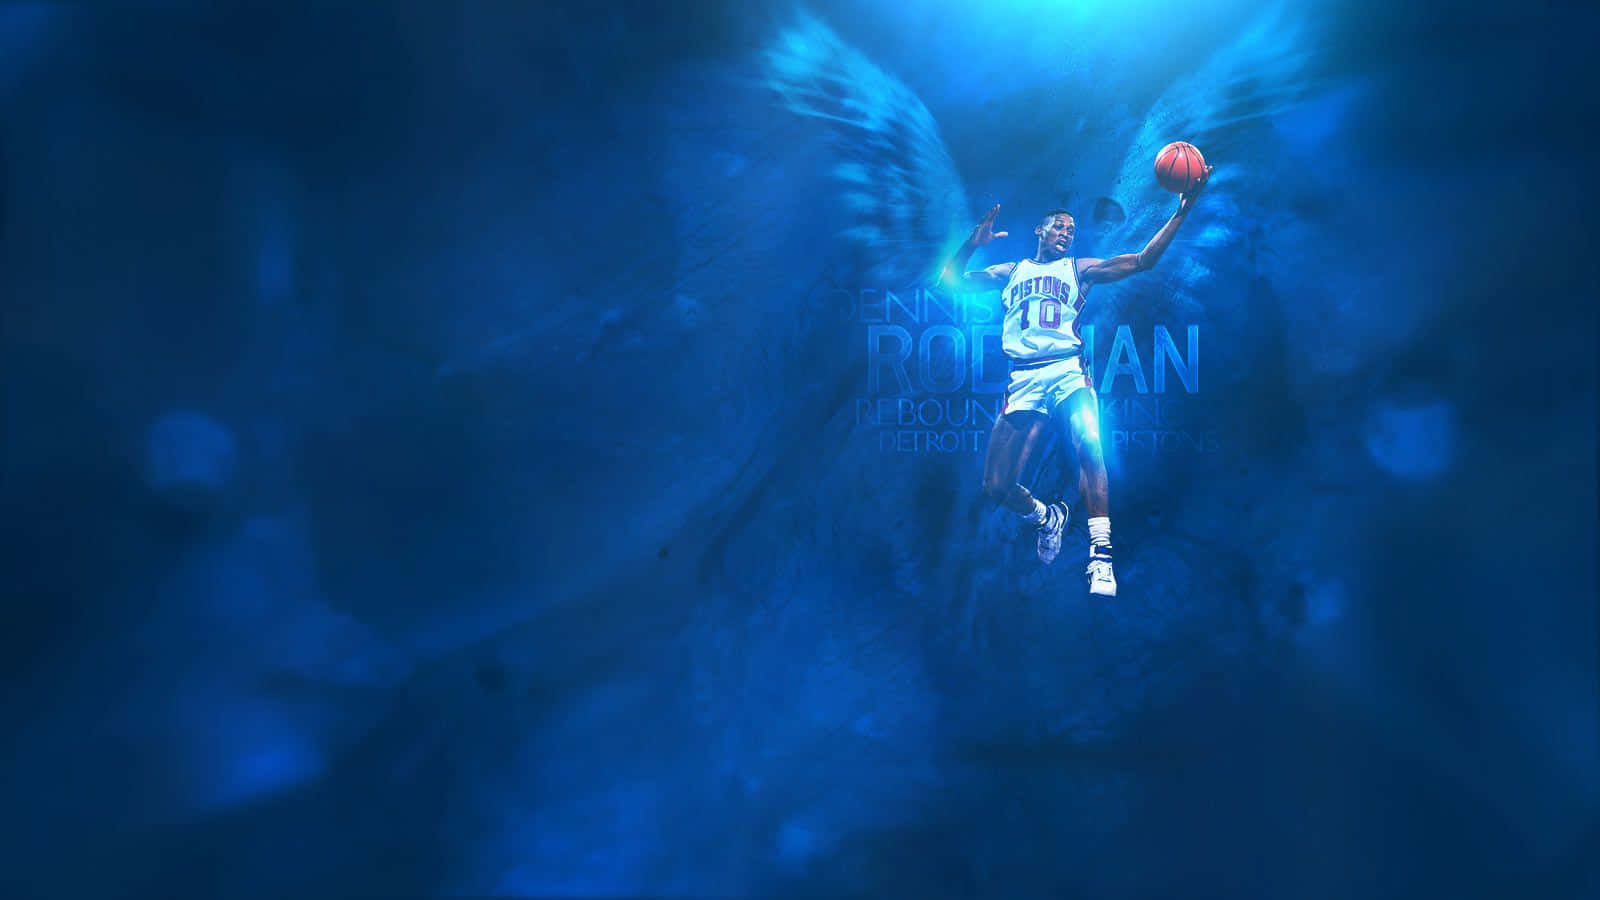 Blauerbasketball Dennis Rodman Fanart Wallpaper